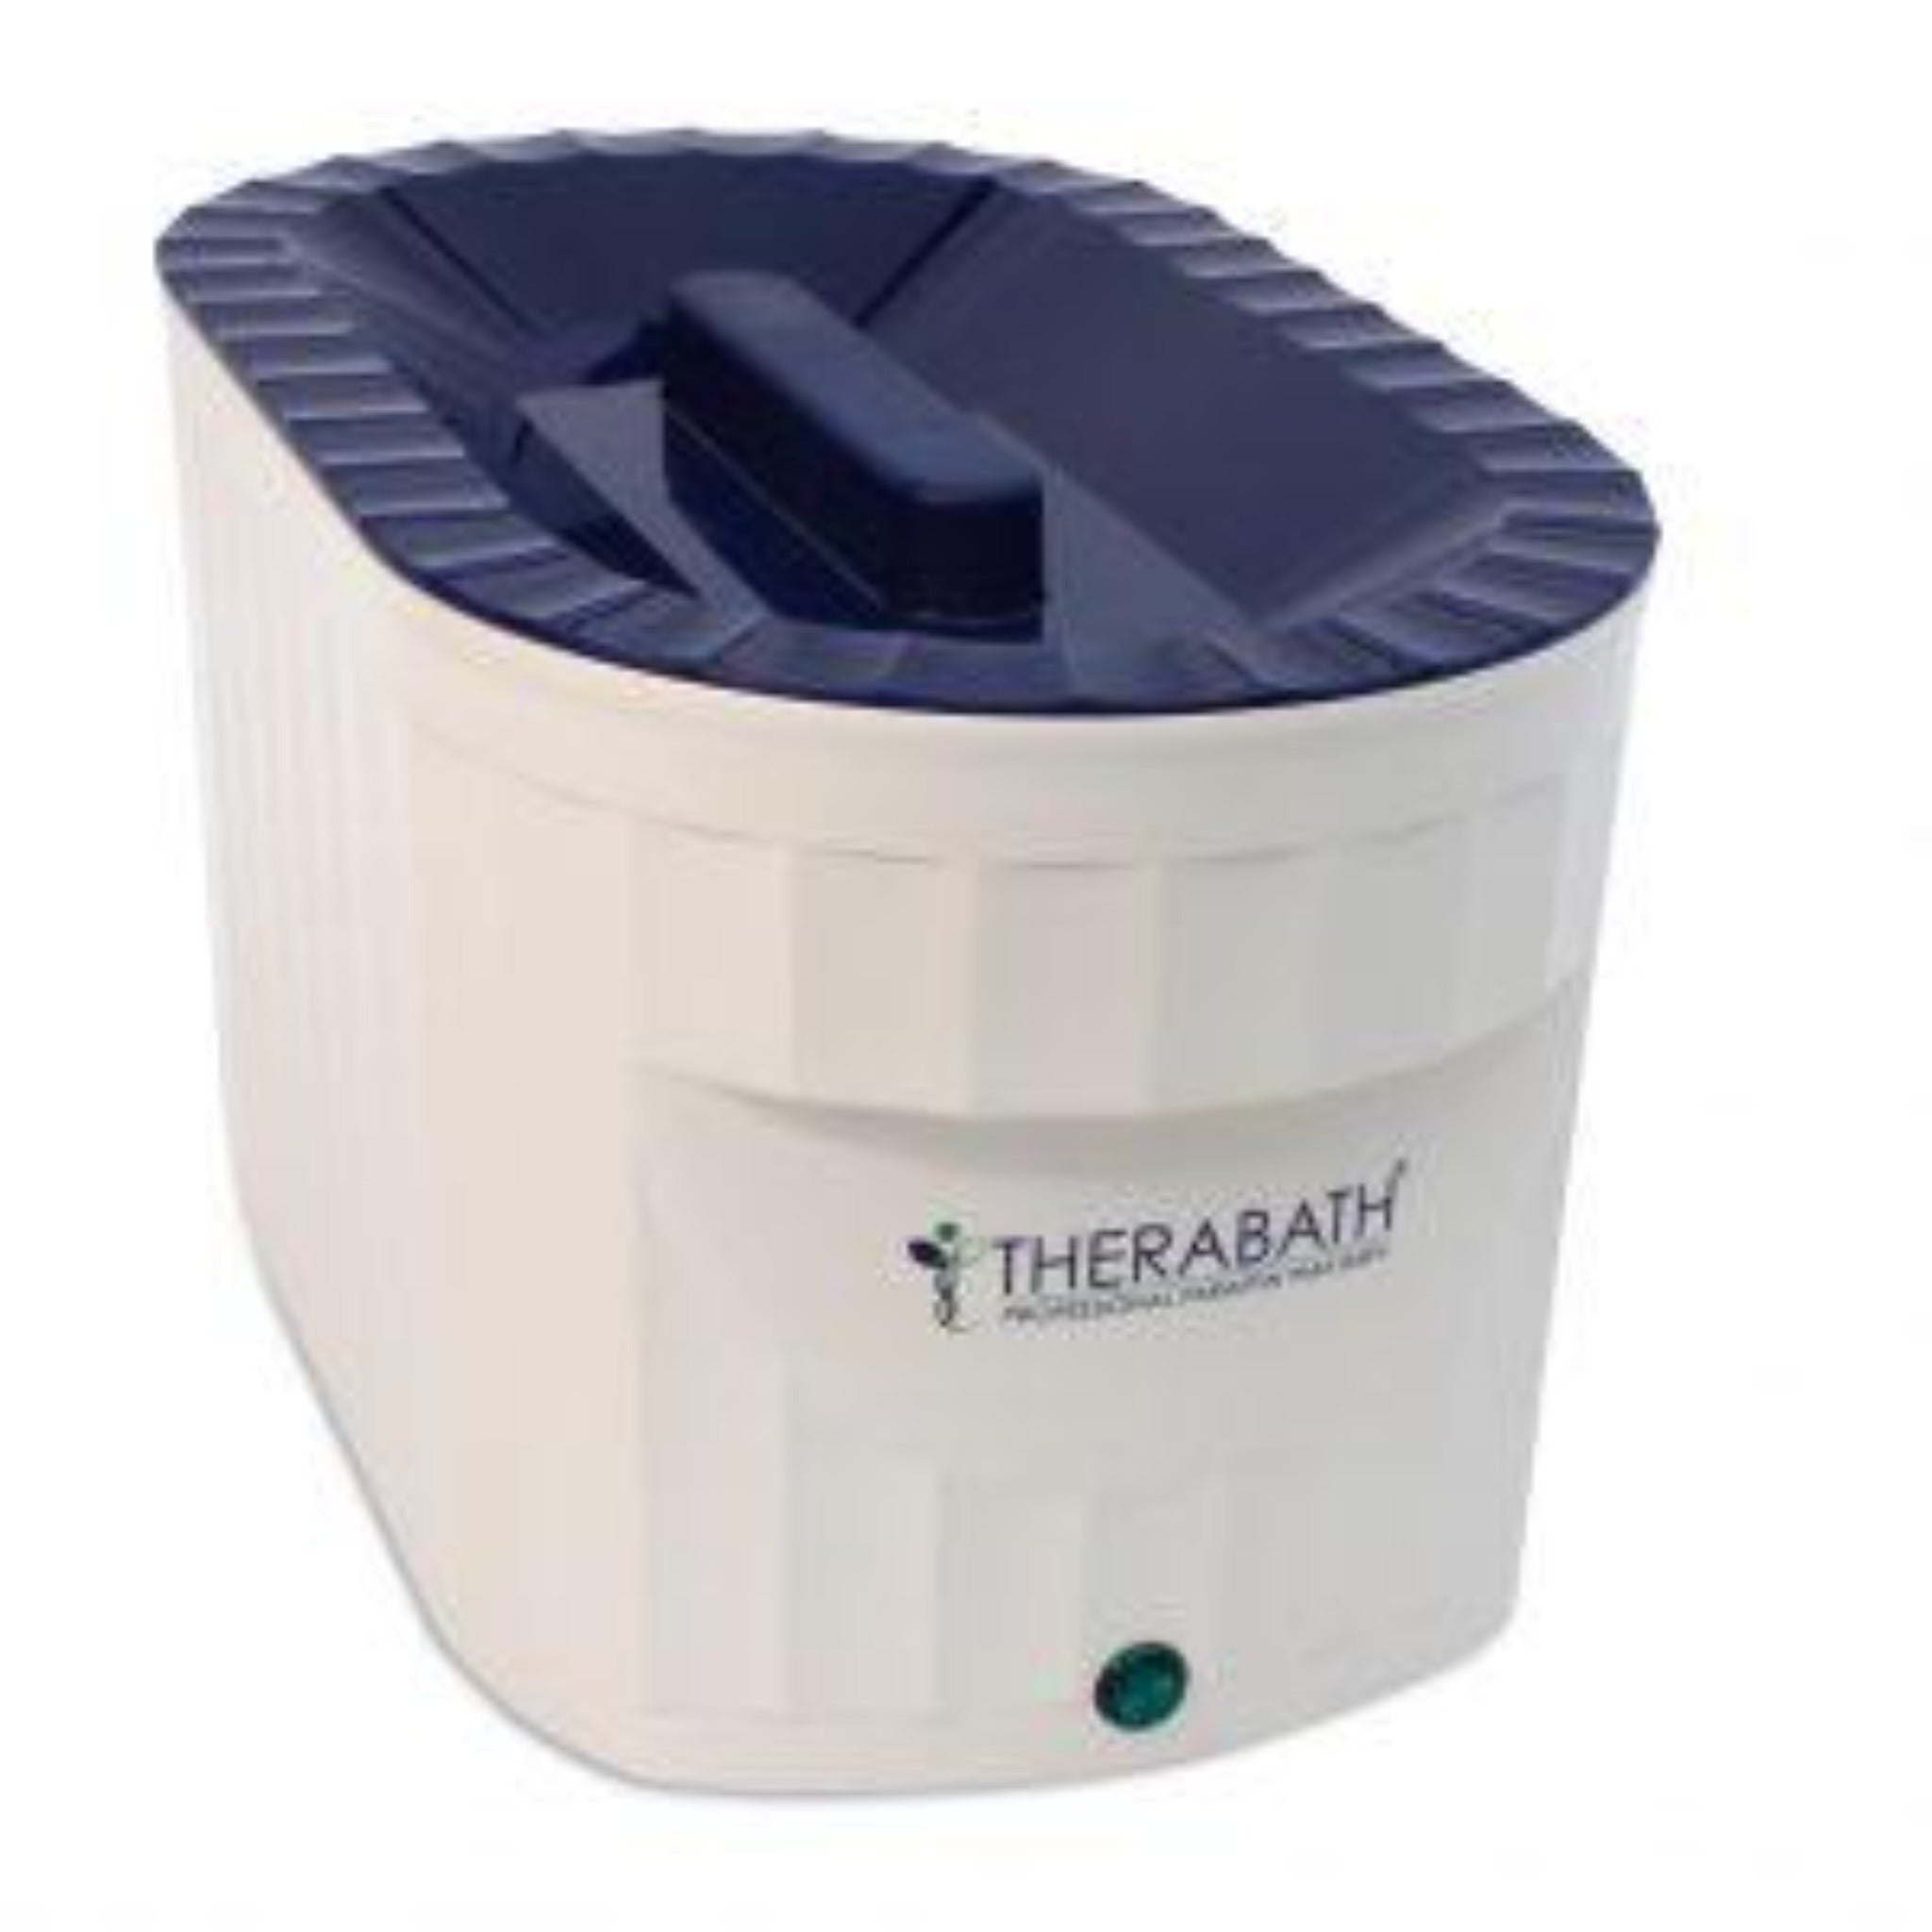 Therabath Professional Paraffin Wax Bath TB6